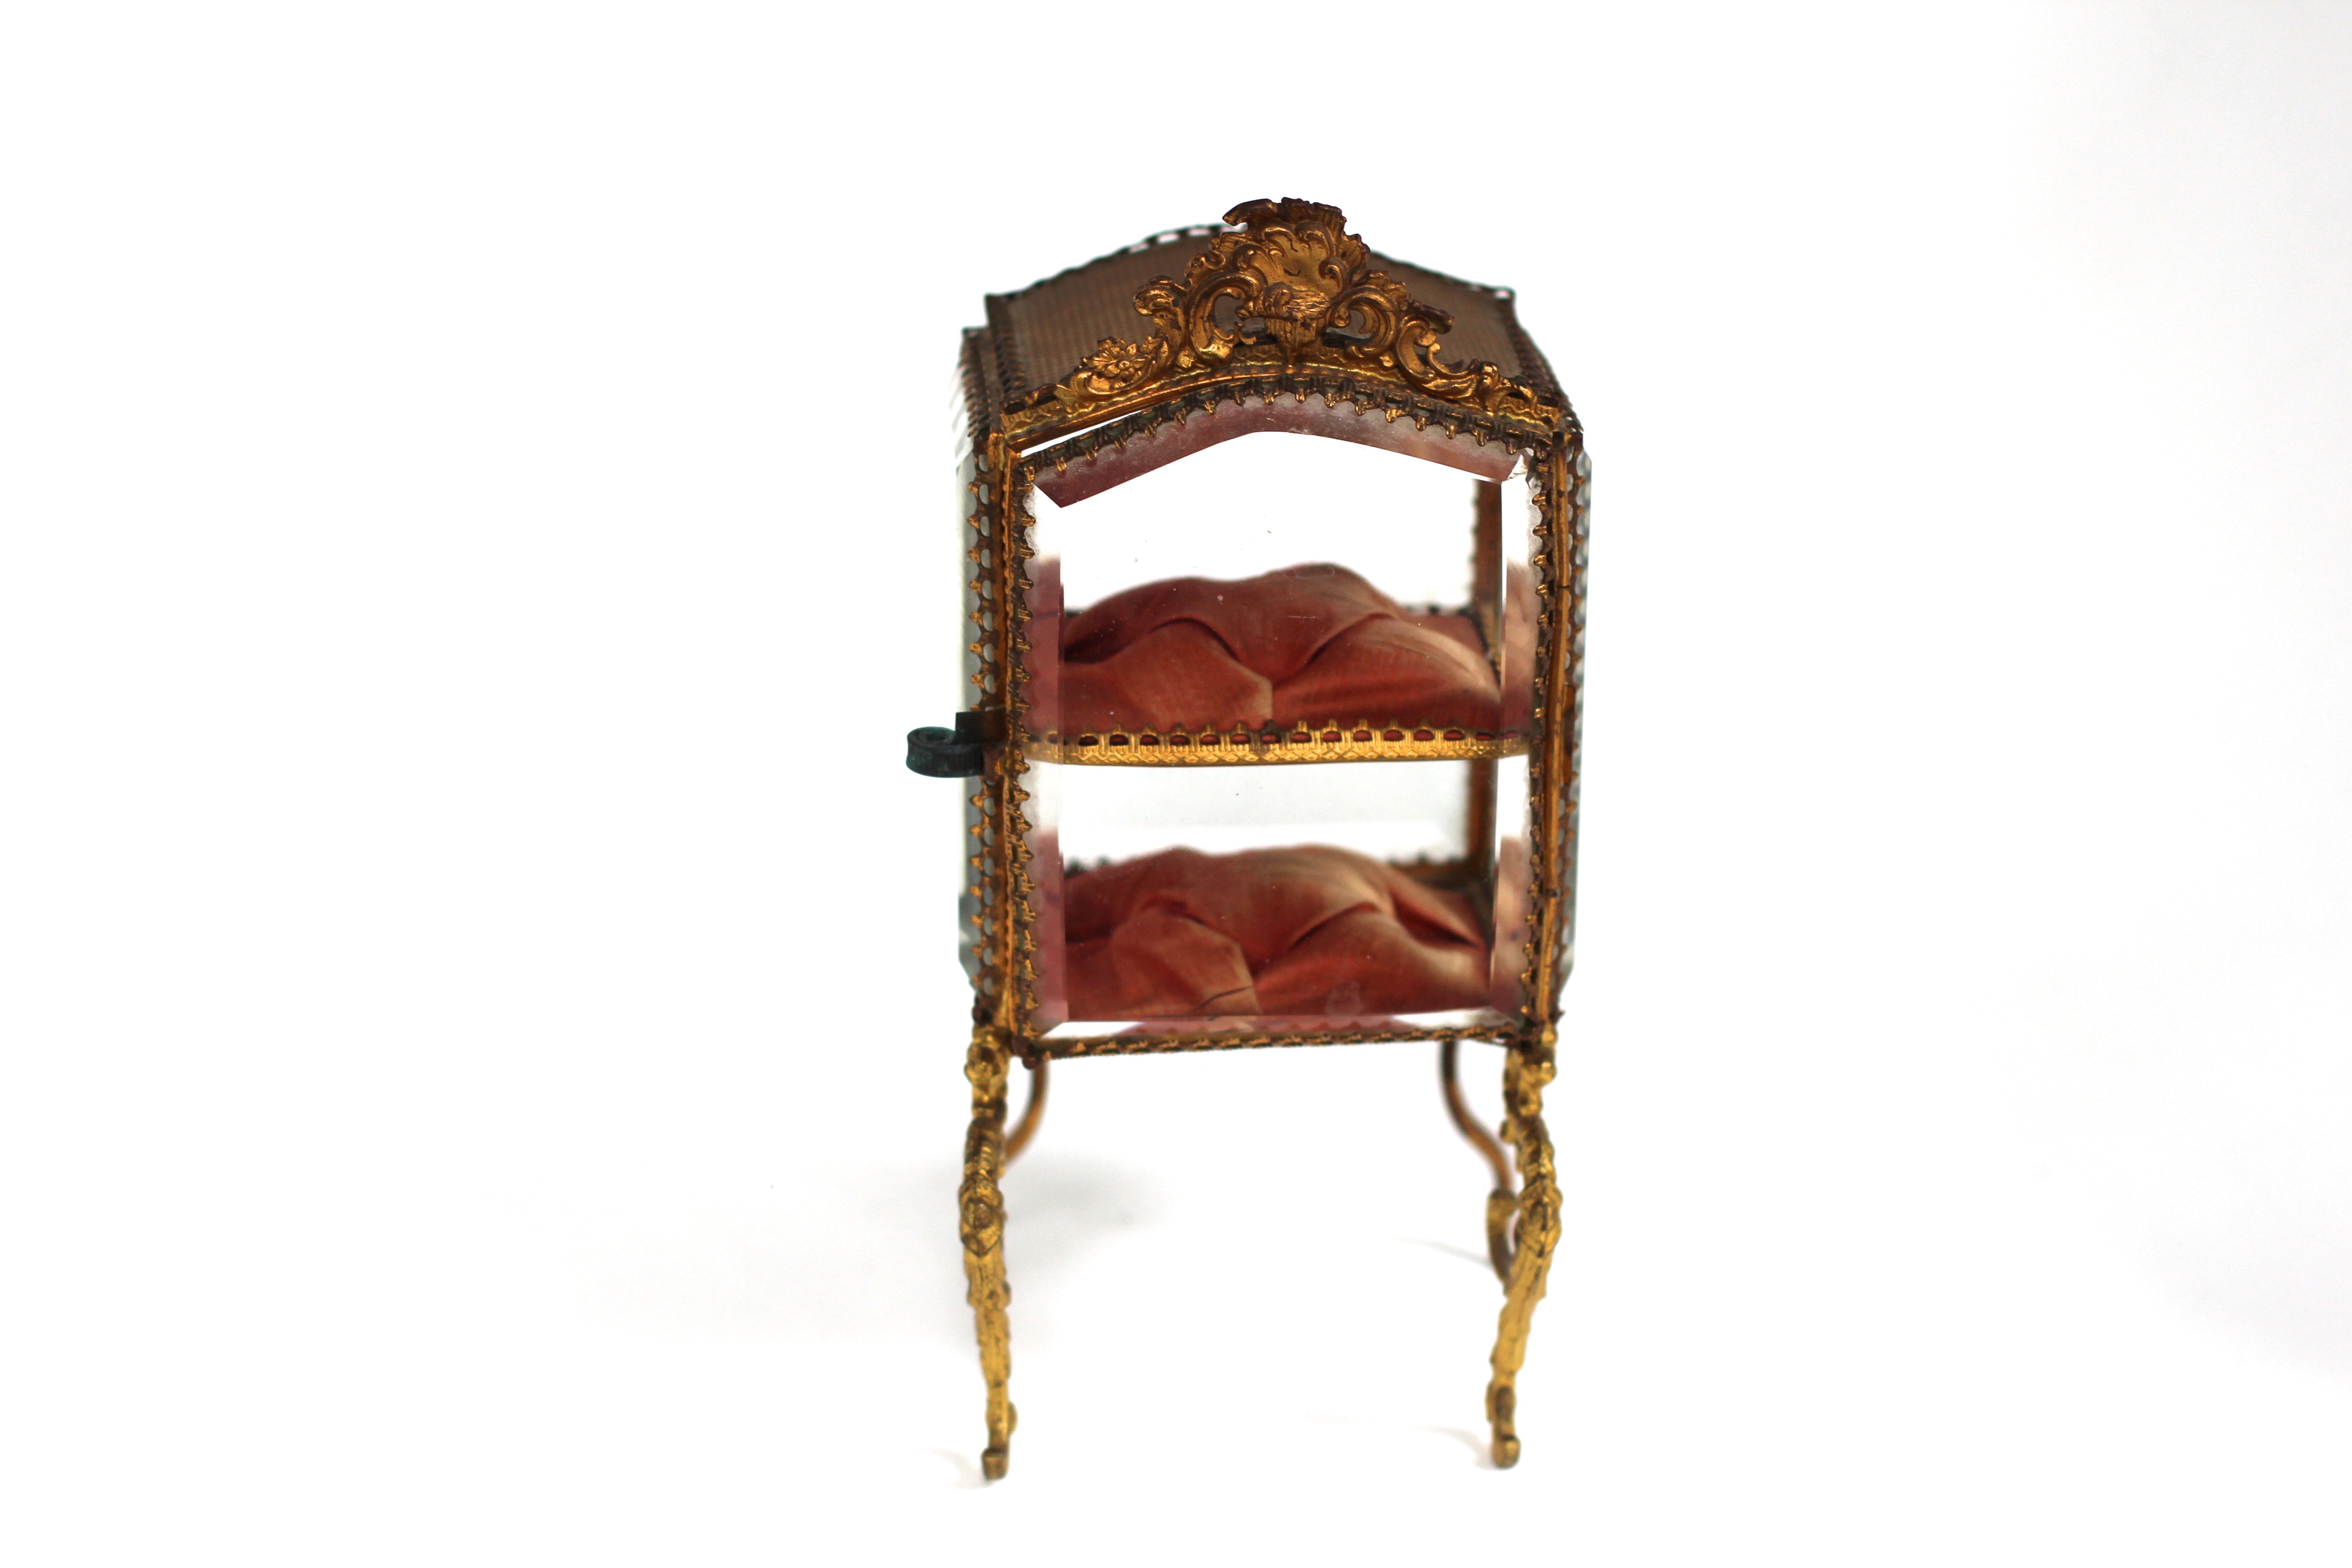 Antique Rare French Victorian Jewelry Box No. 137